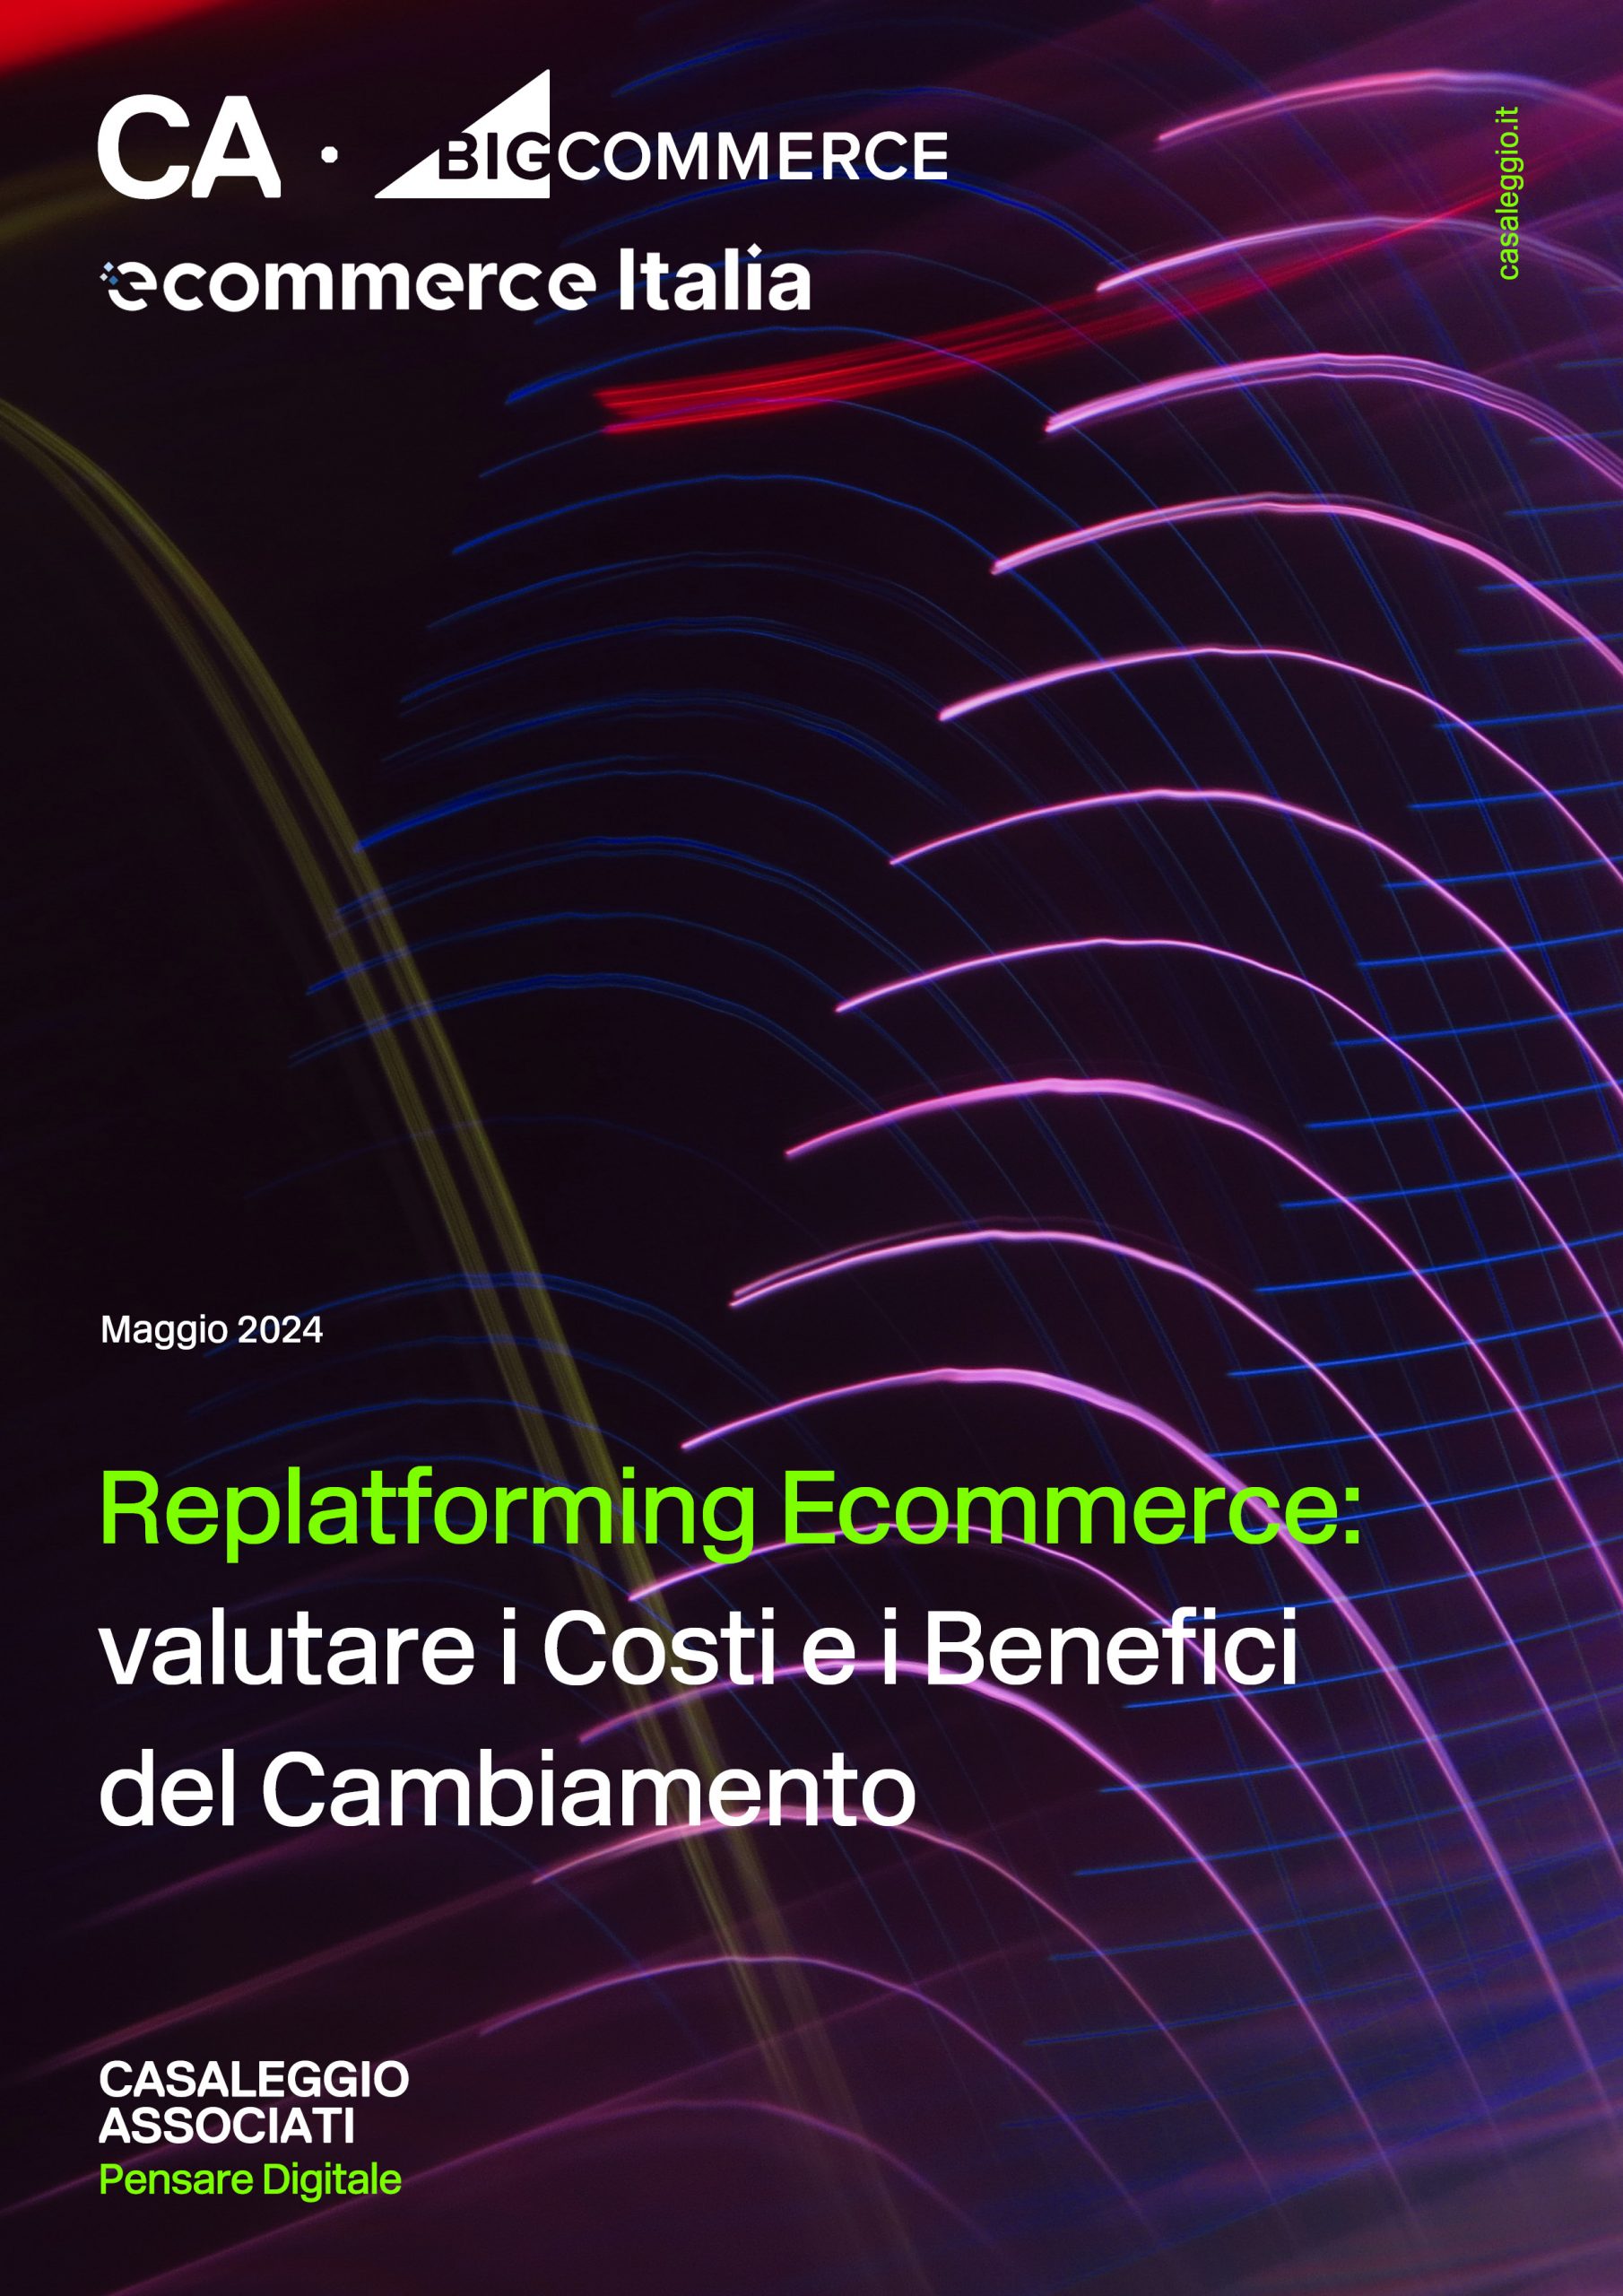 Replatforming Ecommerce: Valutare i Costi e i Benefici del Cambiamento - Report